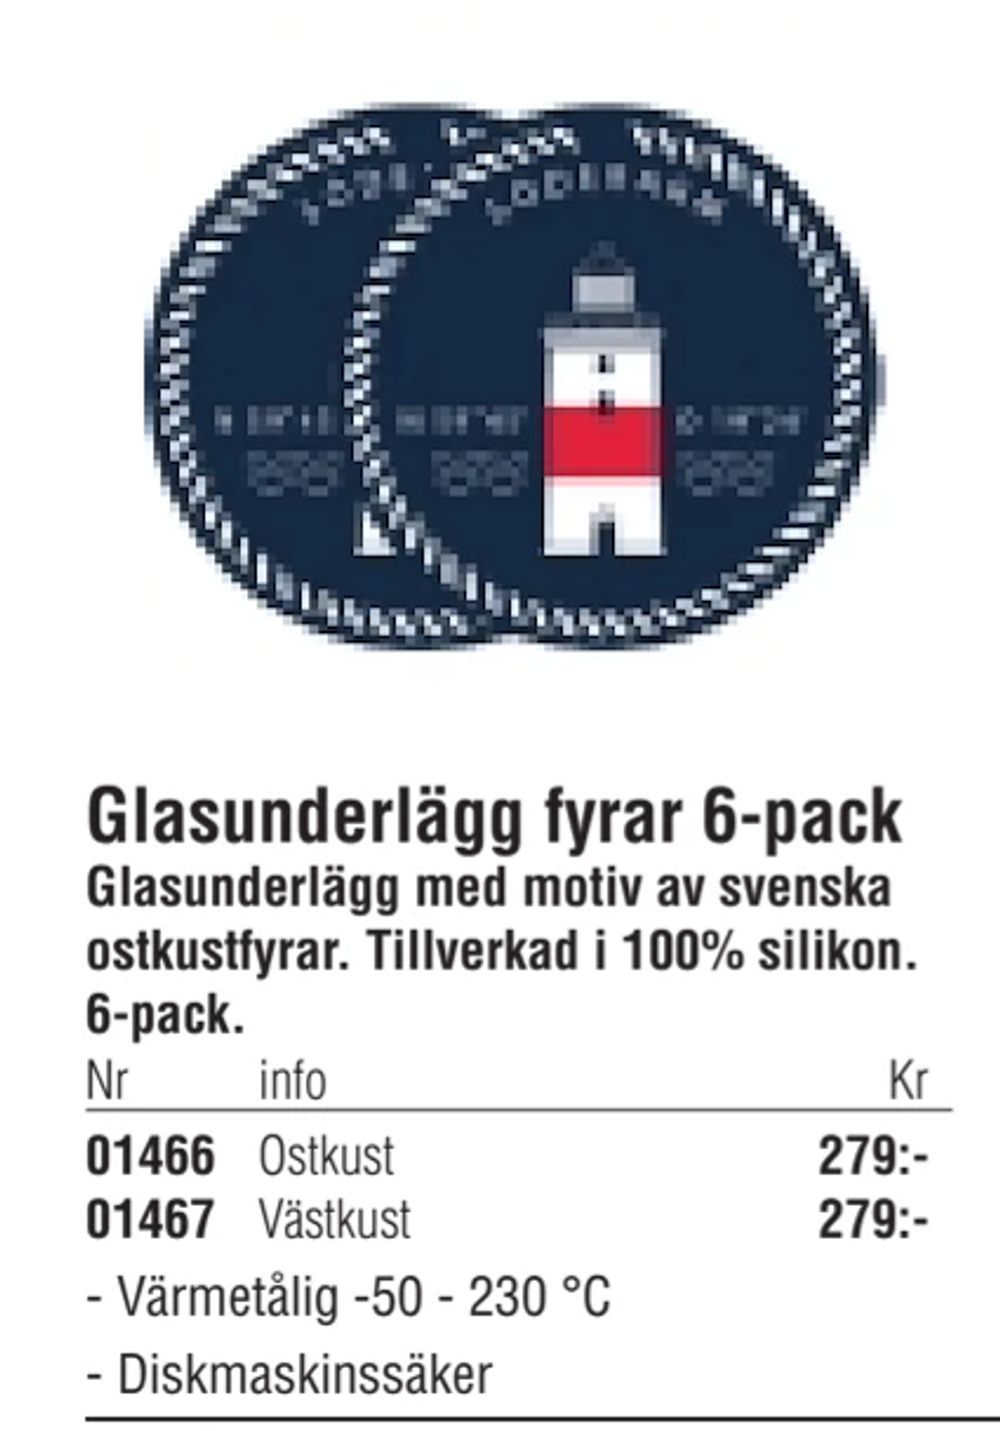 Erbjudanden på Glasunderlägg fyrar 6-pack från Erlandsons Brygga för 279 kr